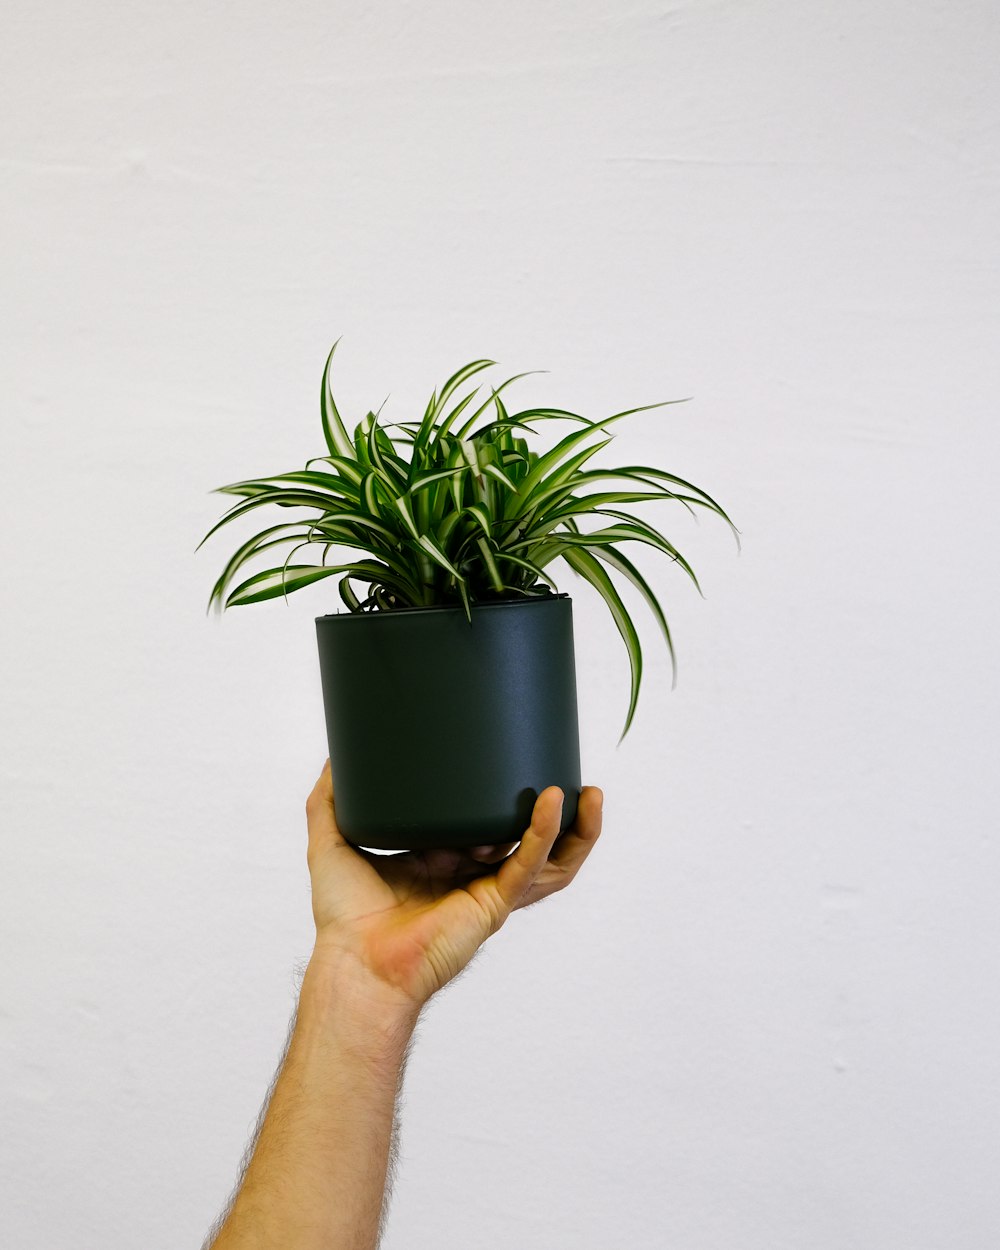 Una mano sosteniendo una planta en maceta en una pared blanca